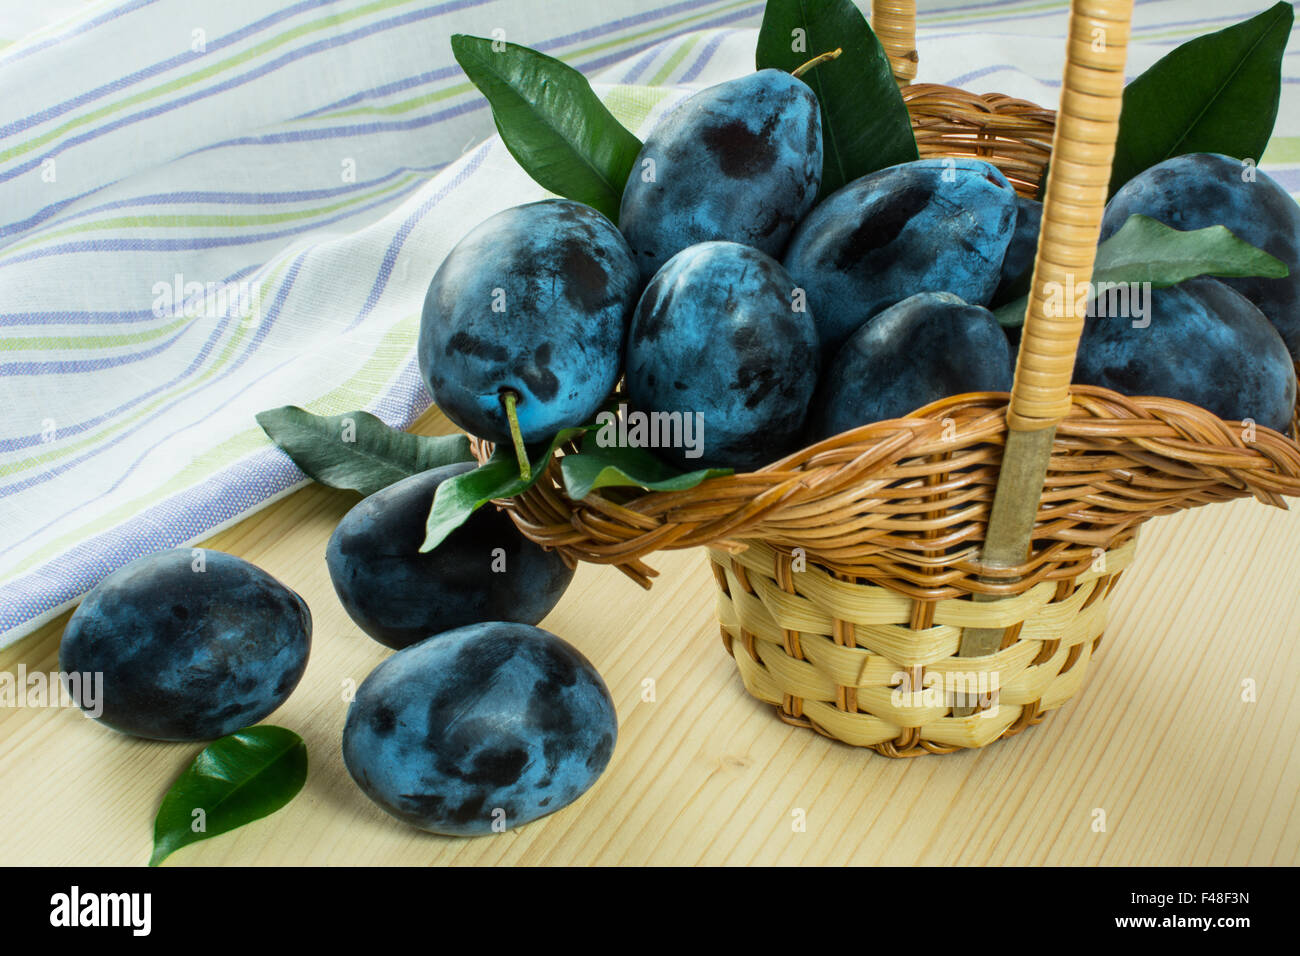 Les prunes mûres dans de petites feuilles vertes panier en osier sur le linge de table en bois avec des serviettes à rayures. Selective focus Banque D'Images